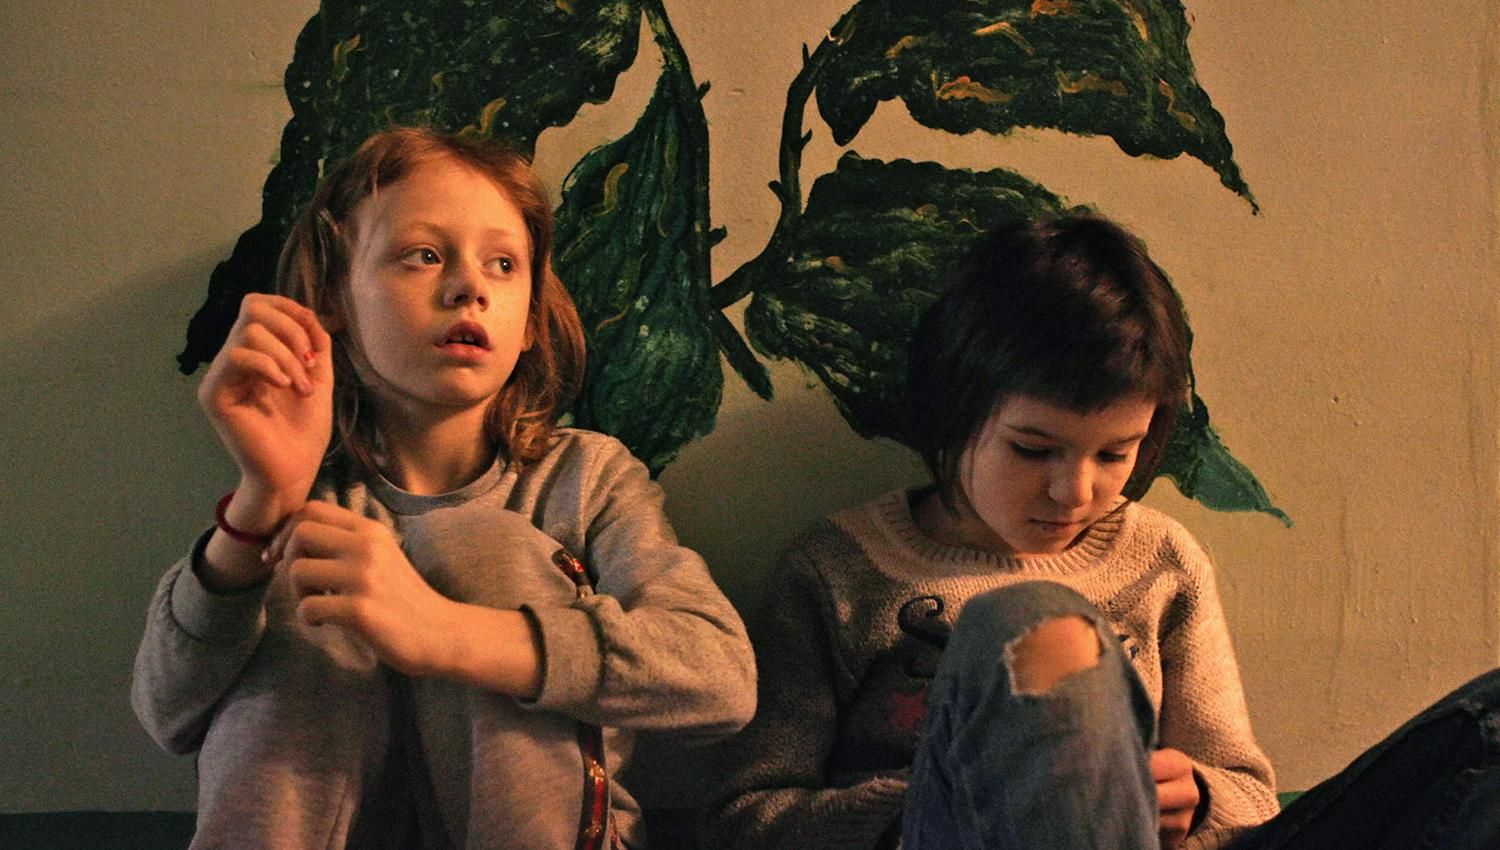 "Дом из осколков": фильм о детях на востоке Украины попадет в шорт-лист Оскара-2023 - Кино